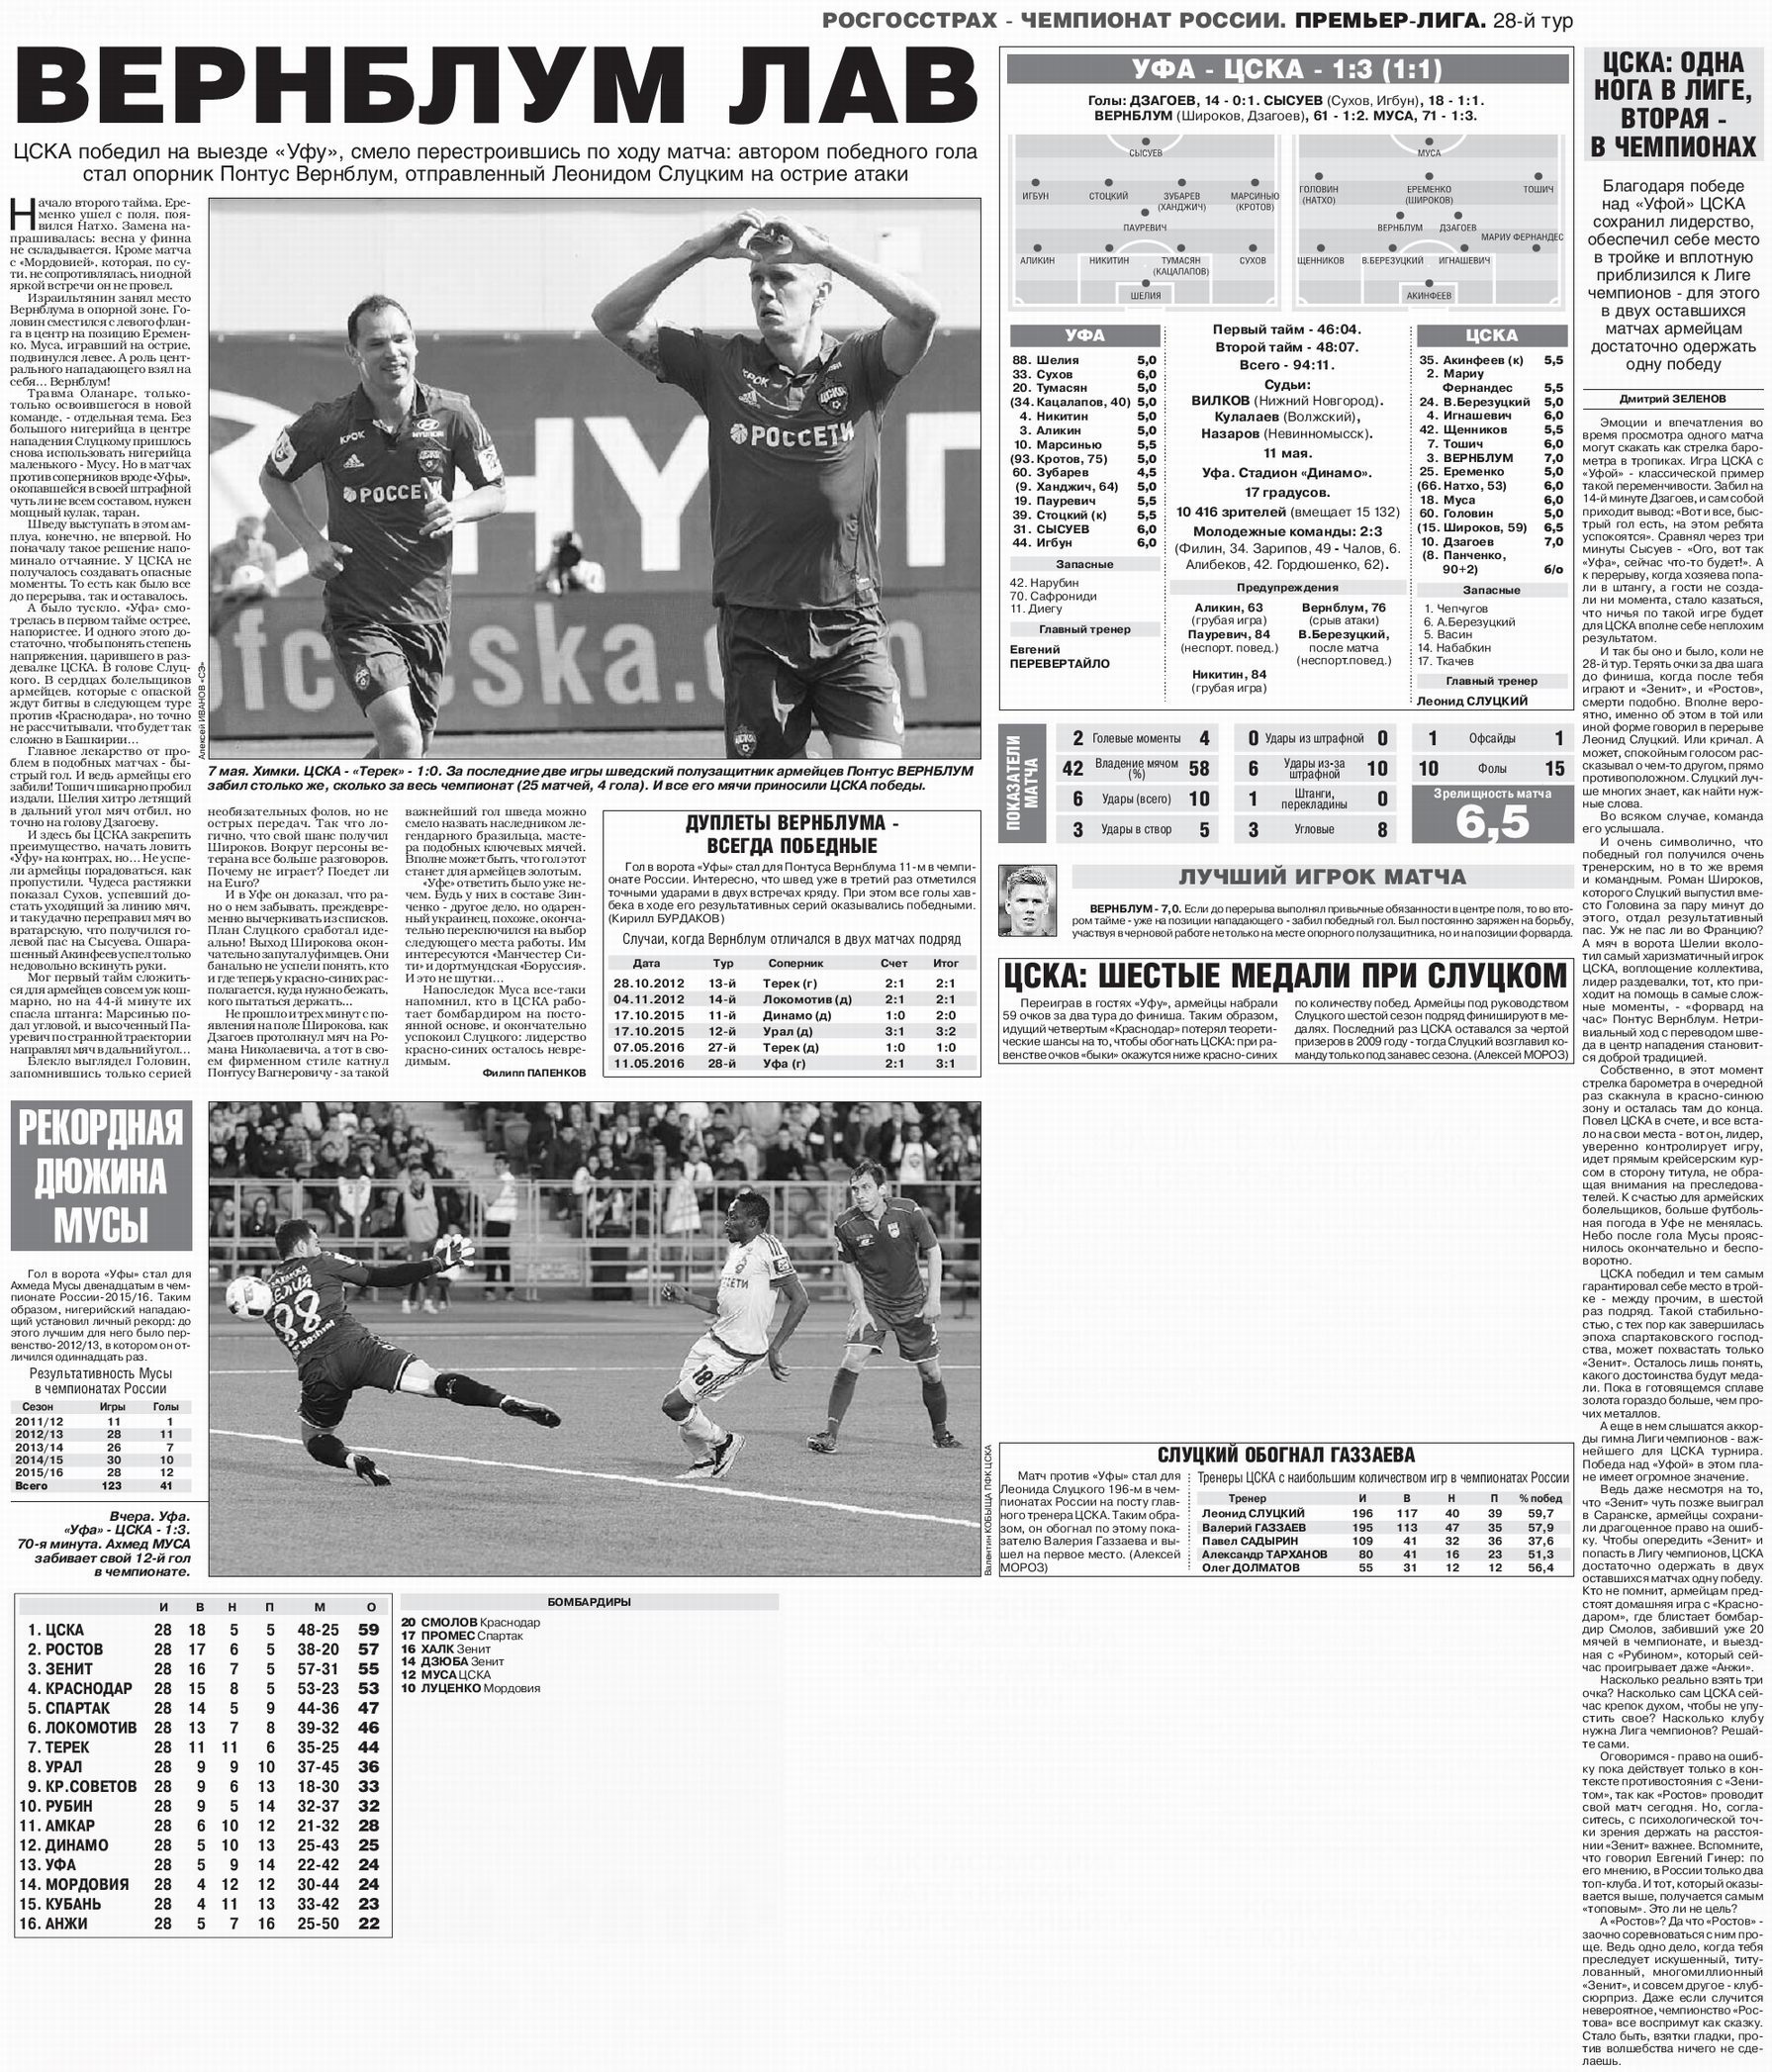 2016-05-11.Ufa-CSKA